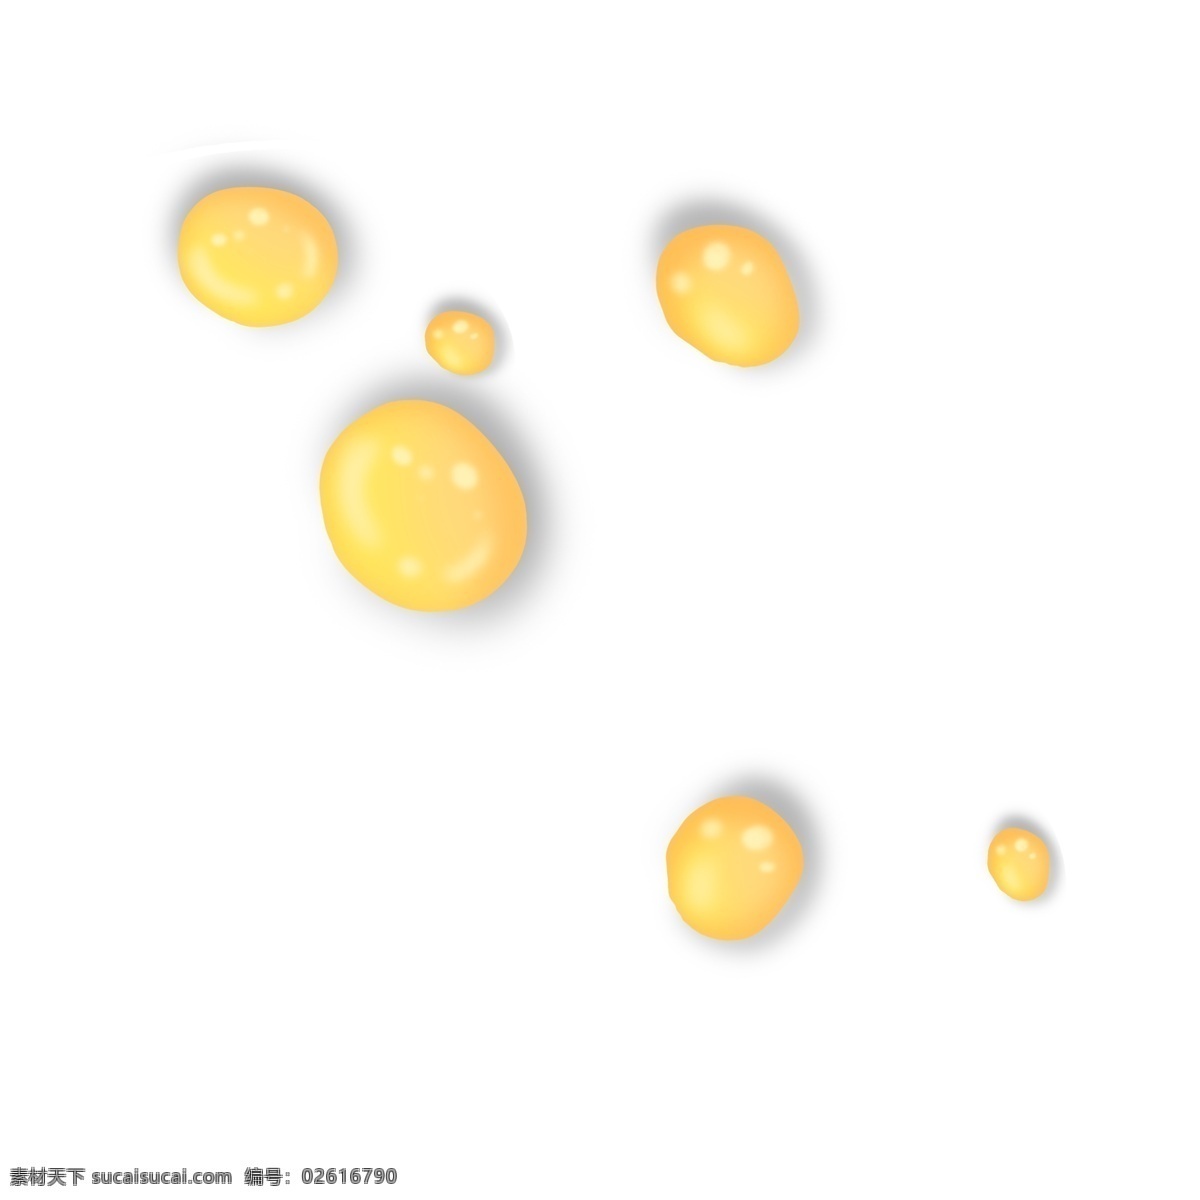 浅 金色 圆形 立体 油 滴 油滴 水 水滴 水泡 圆 圈 立体感 浅金色 浅色 卡通 半透明 精致 明亮